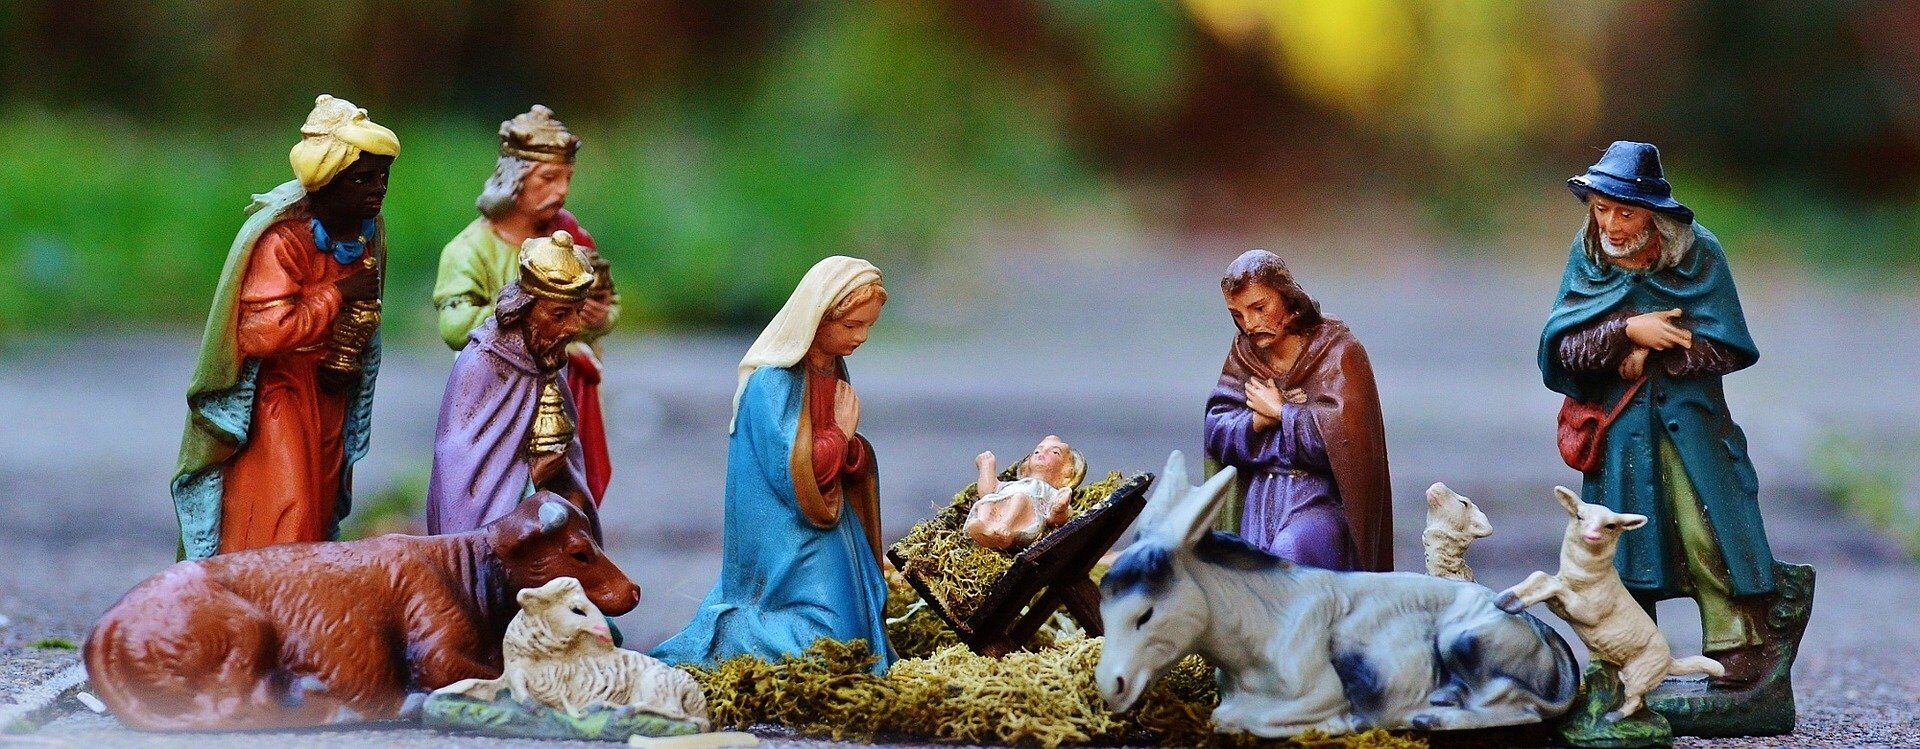 Різдво – велике свято, присвячене спогаду народження Ісуса Христа у Віфлеємі